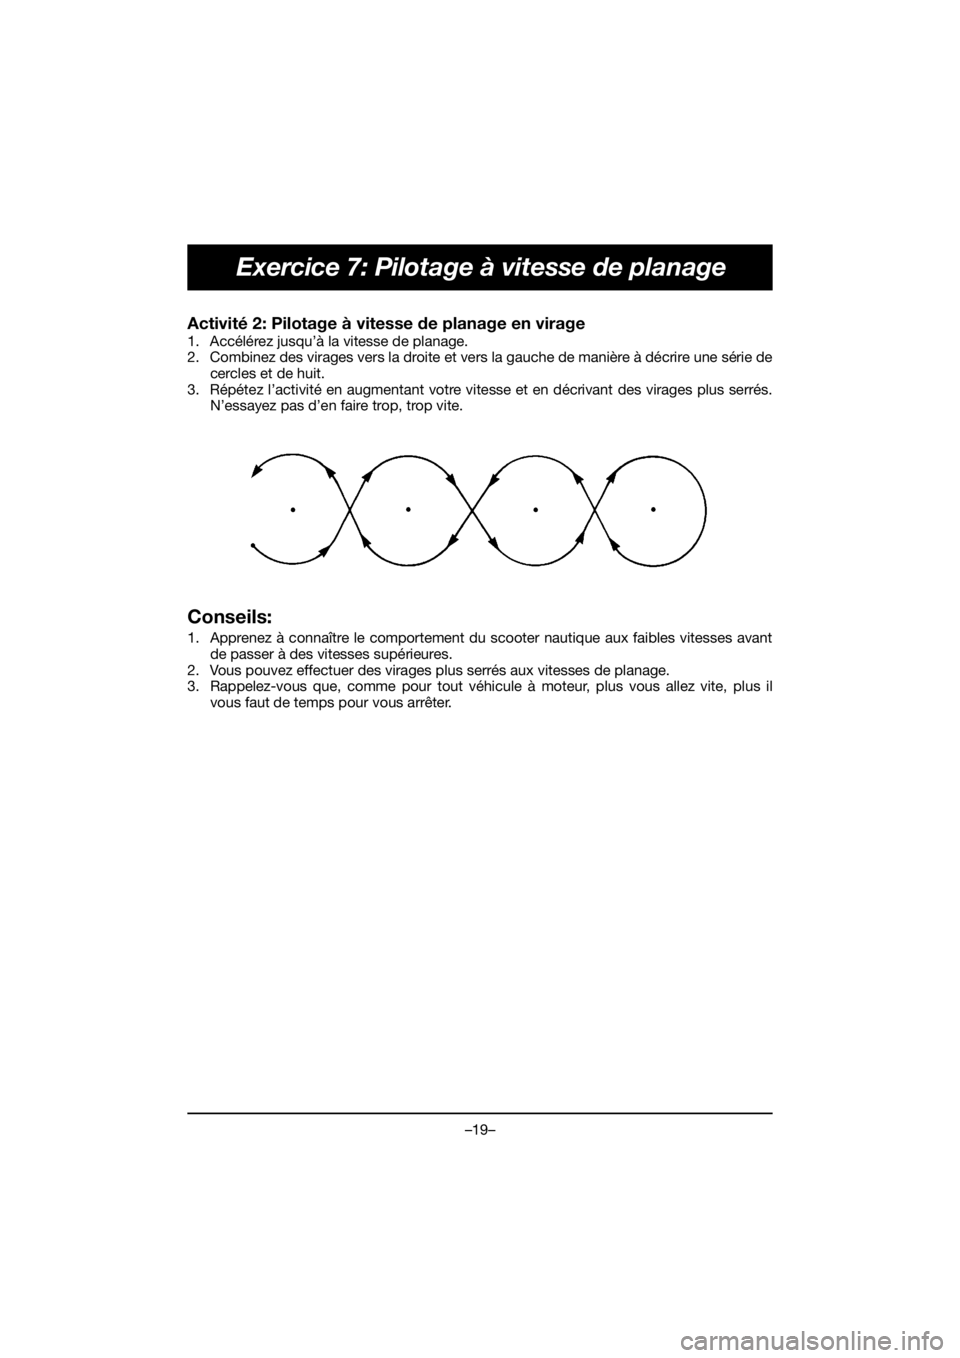 YAMAHA EX 2021  Manuale de Empleo (in Spanish) –19–
Exercice 7: Pilotage à vitesse de planage
Activité 2: Pilotage à vitesse de planage en virage 
1. Accélérez jusqu’à la vitesse de planage. 
2. Combinez des virages vers la droite et v